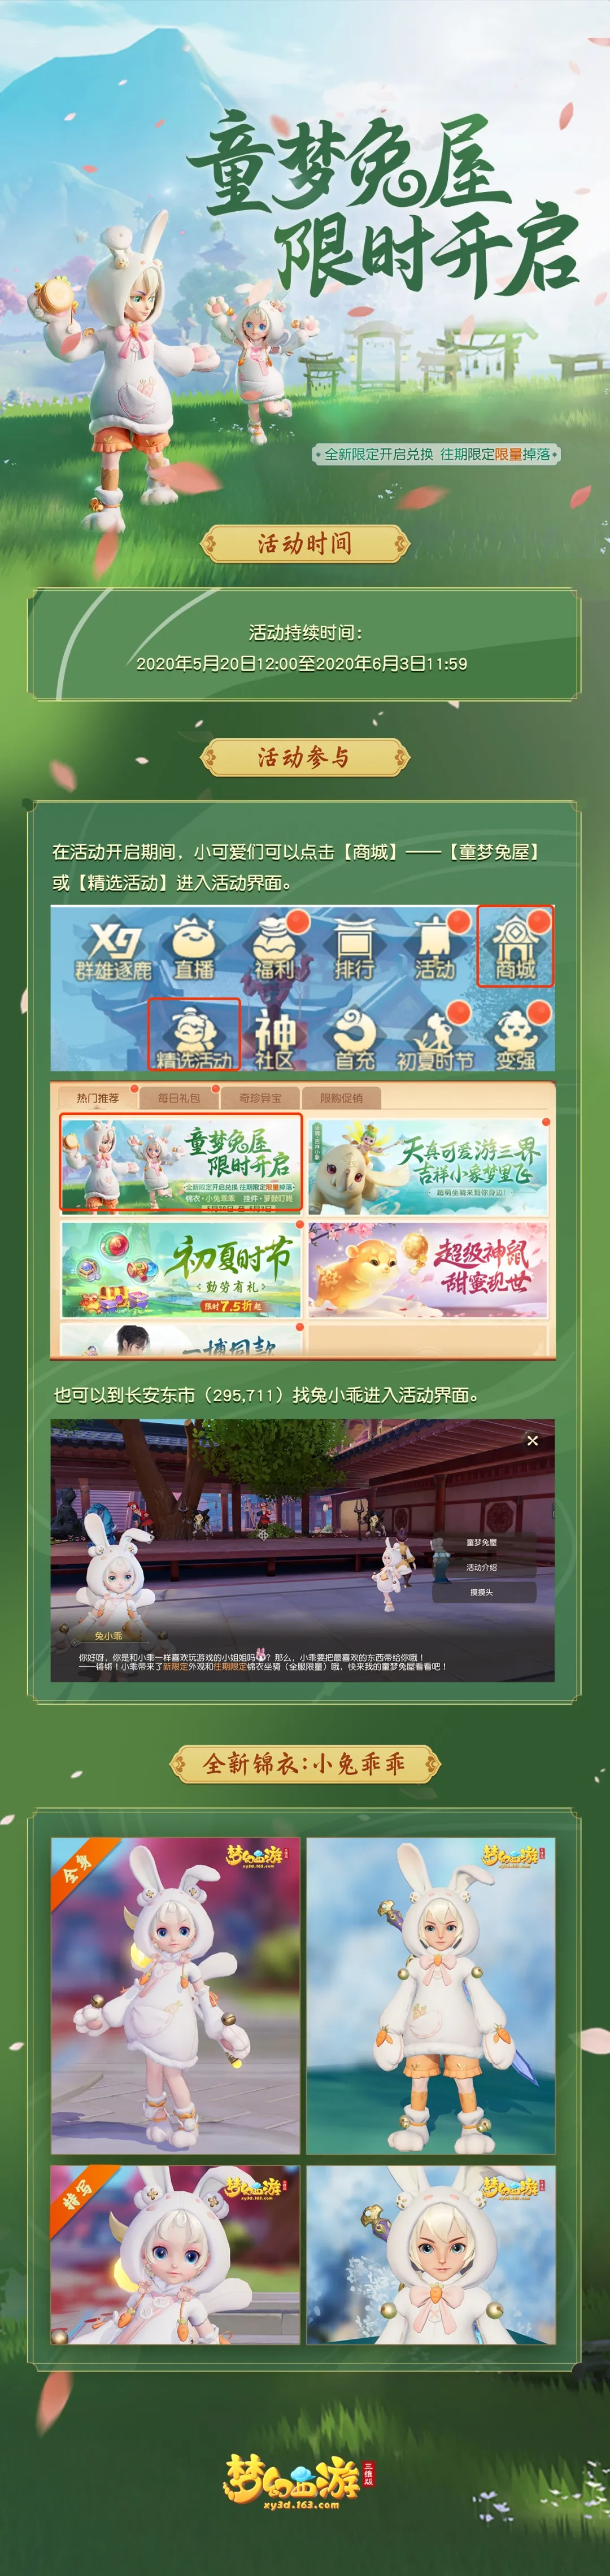 《梦幻西游三维版》5月20日更新公告